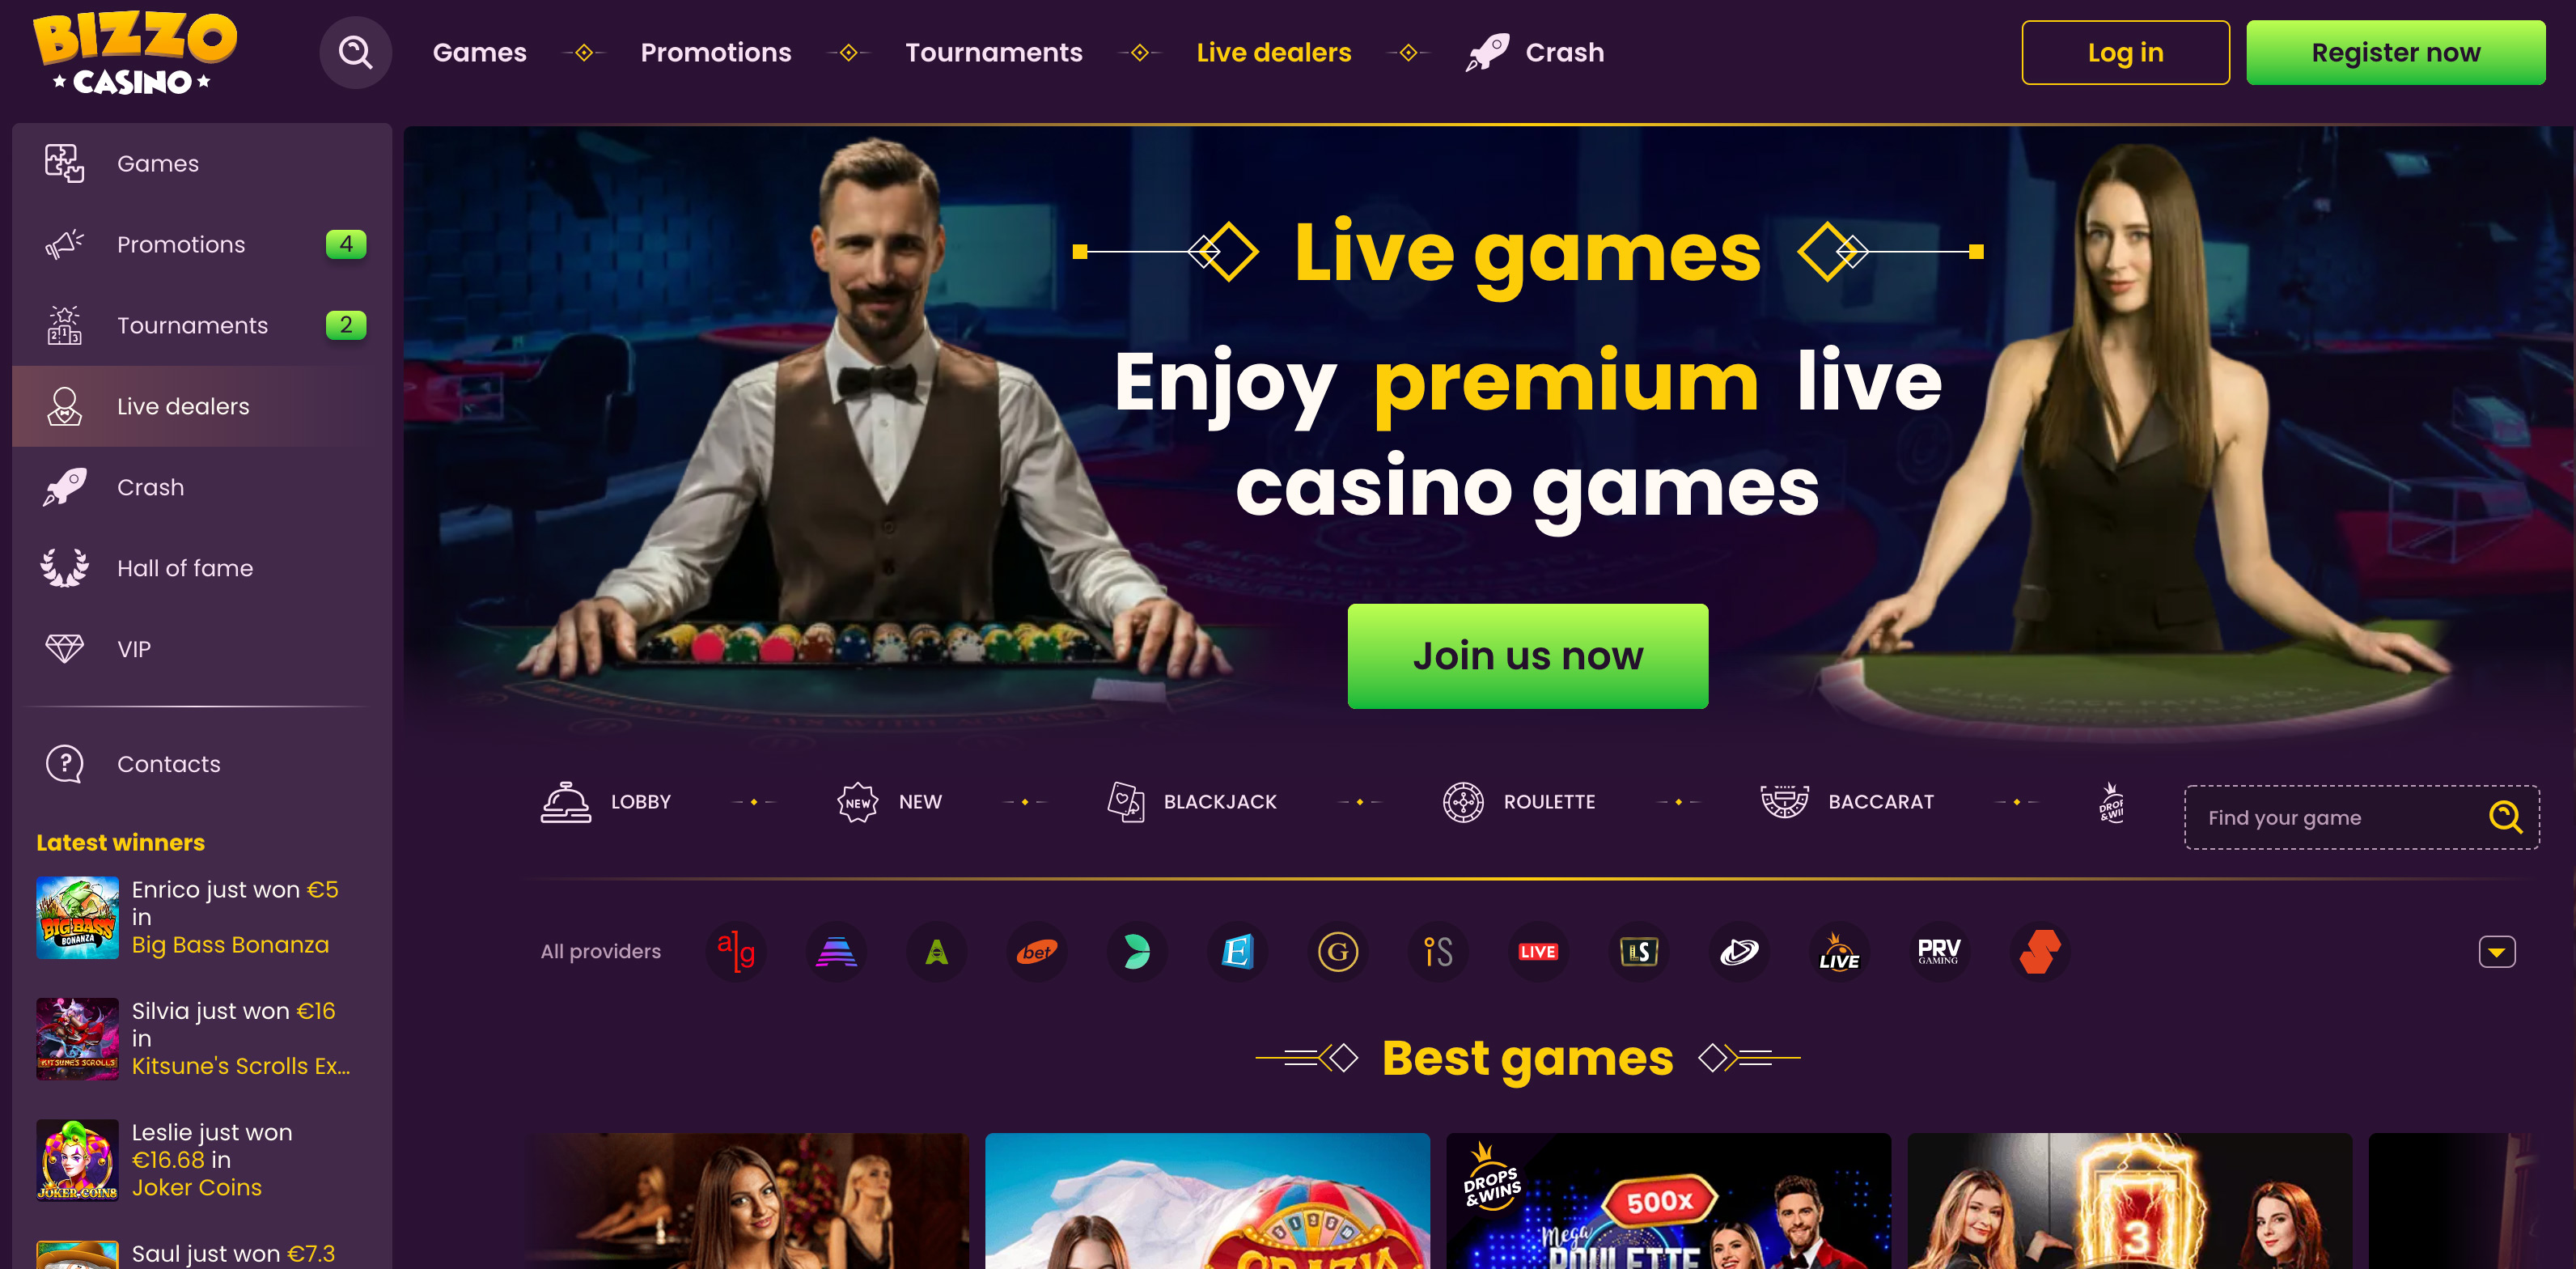 Live Casino Games on Bizzo